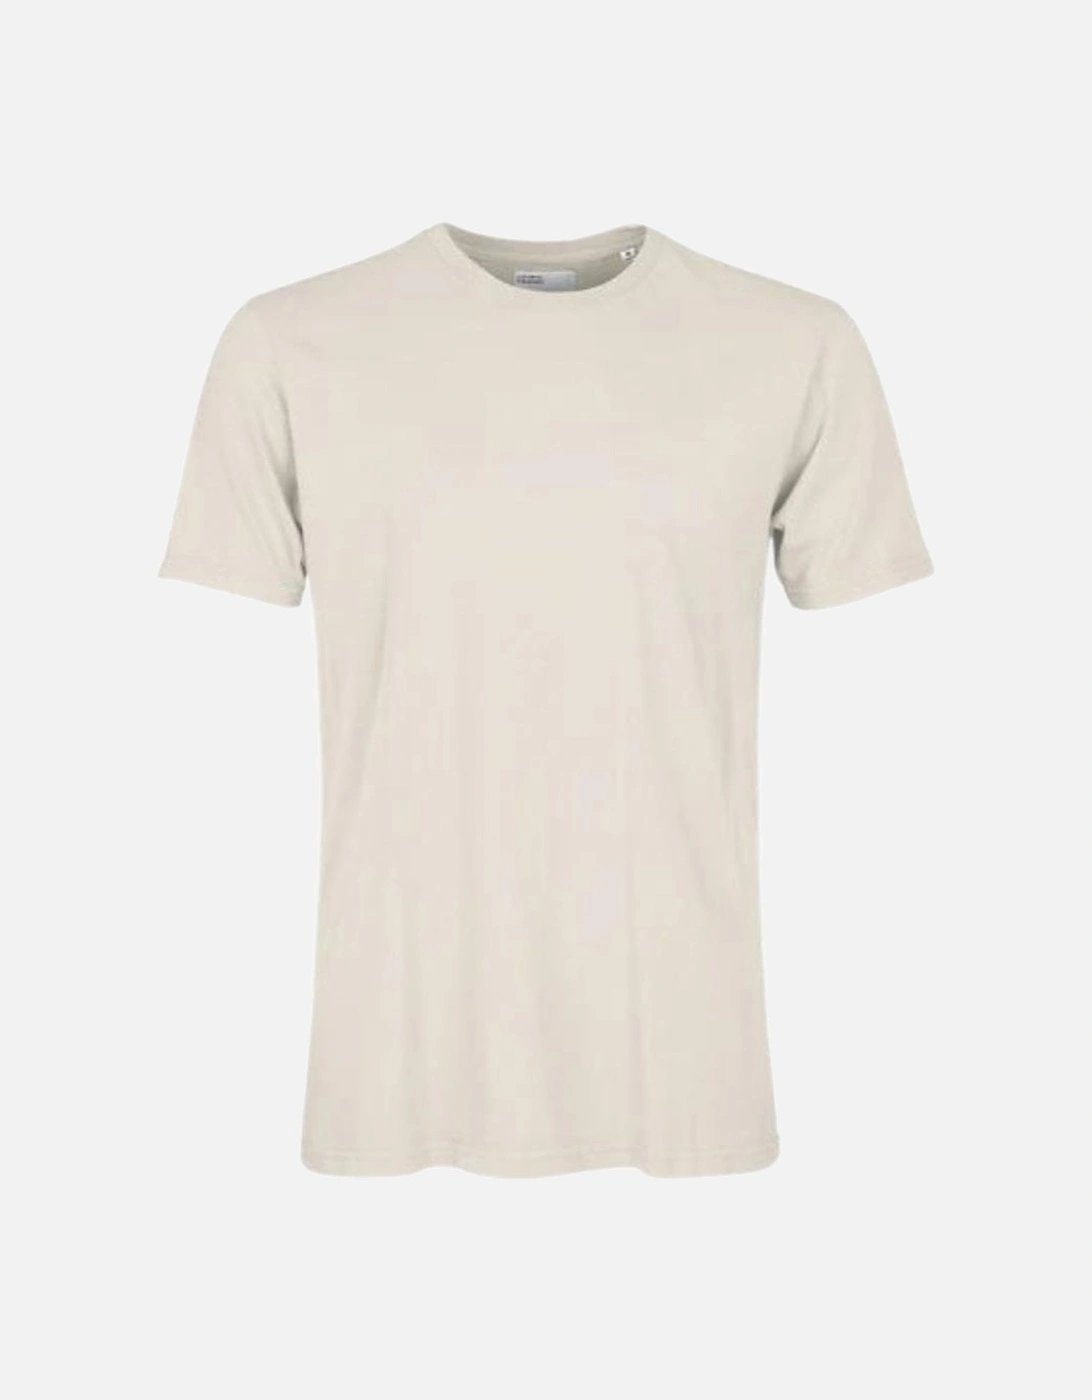 Classic Organic T-Shirt - Ivory White, 2 of 1